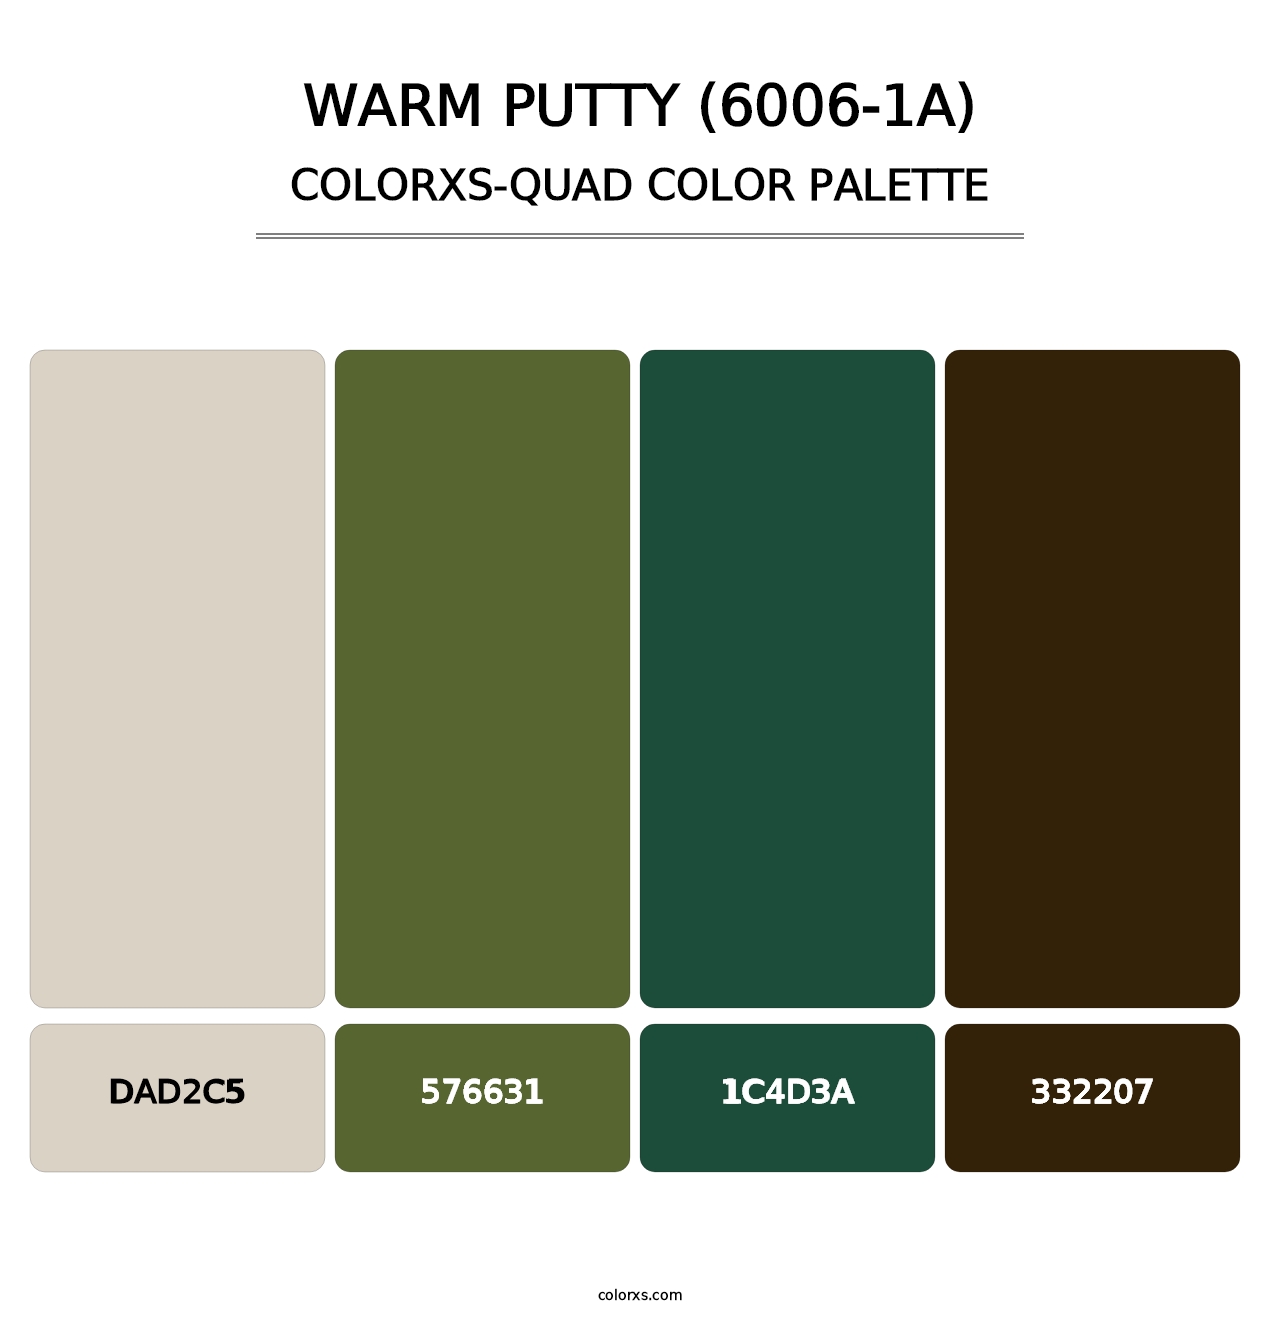 Warm Putty (6006-1A) - Colorxs Quad Palette